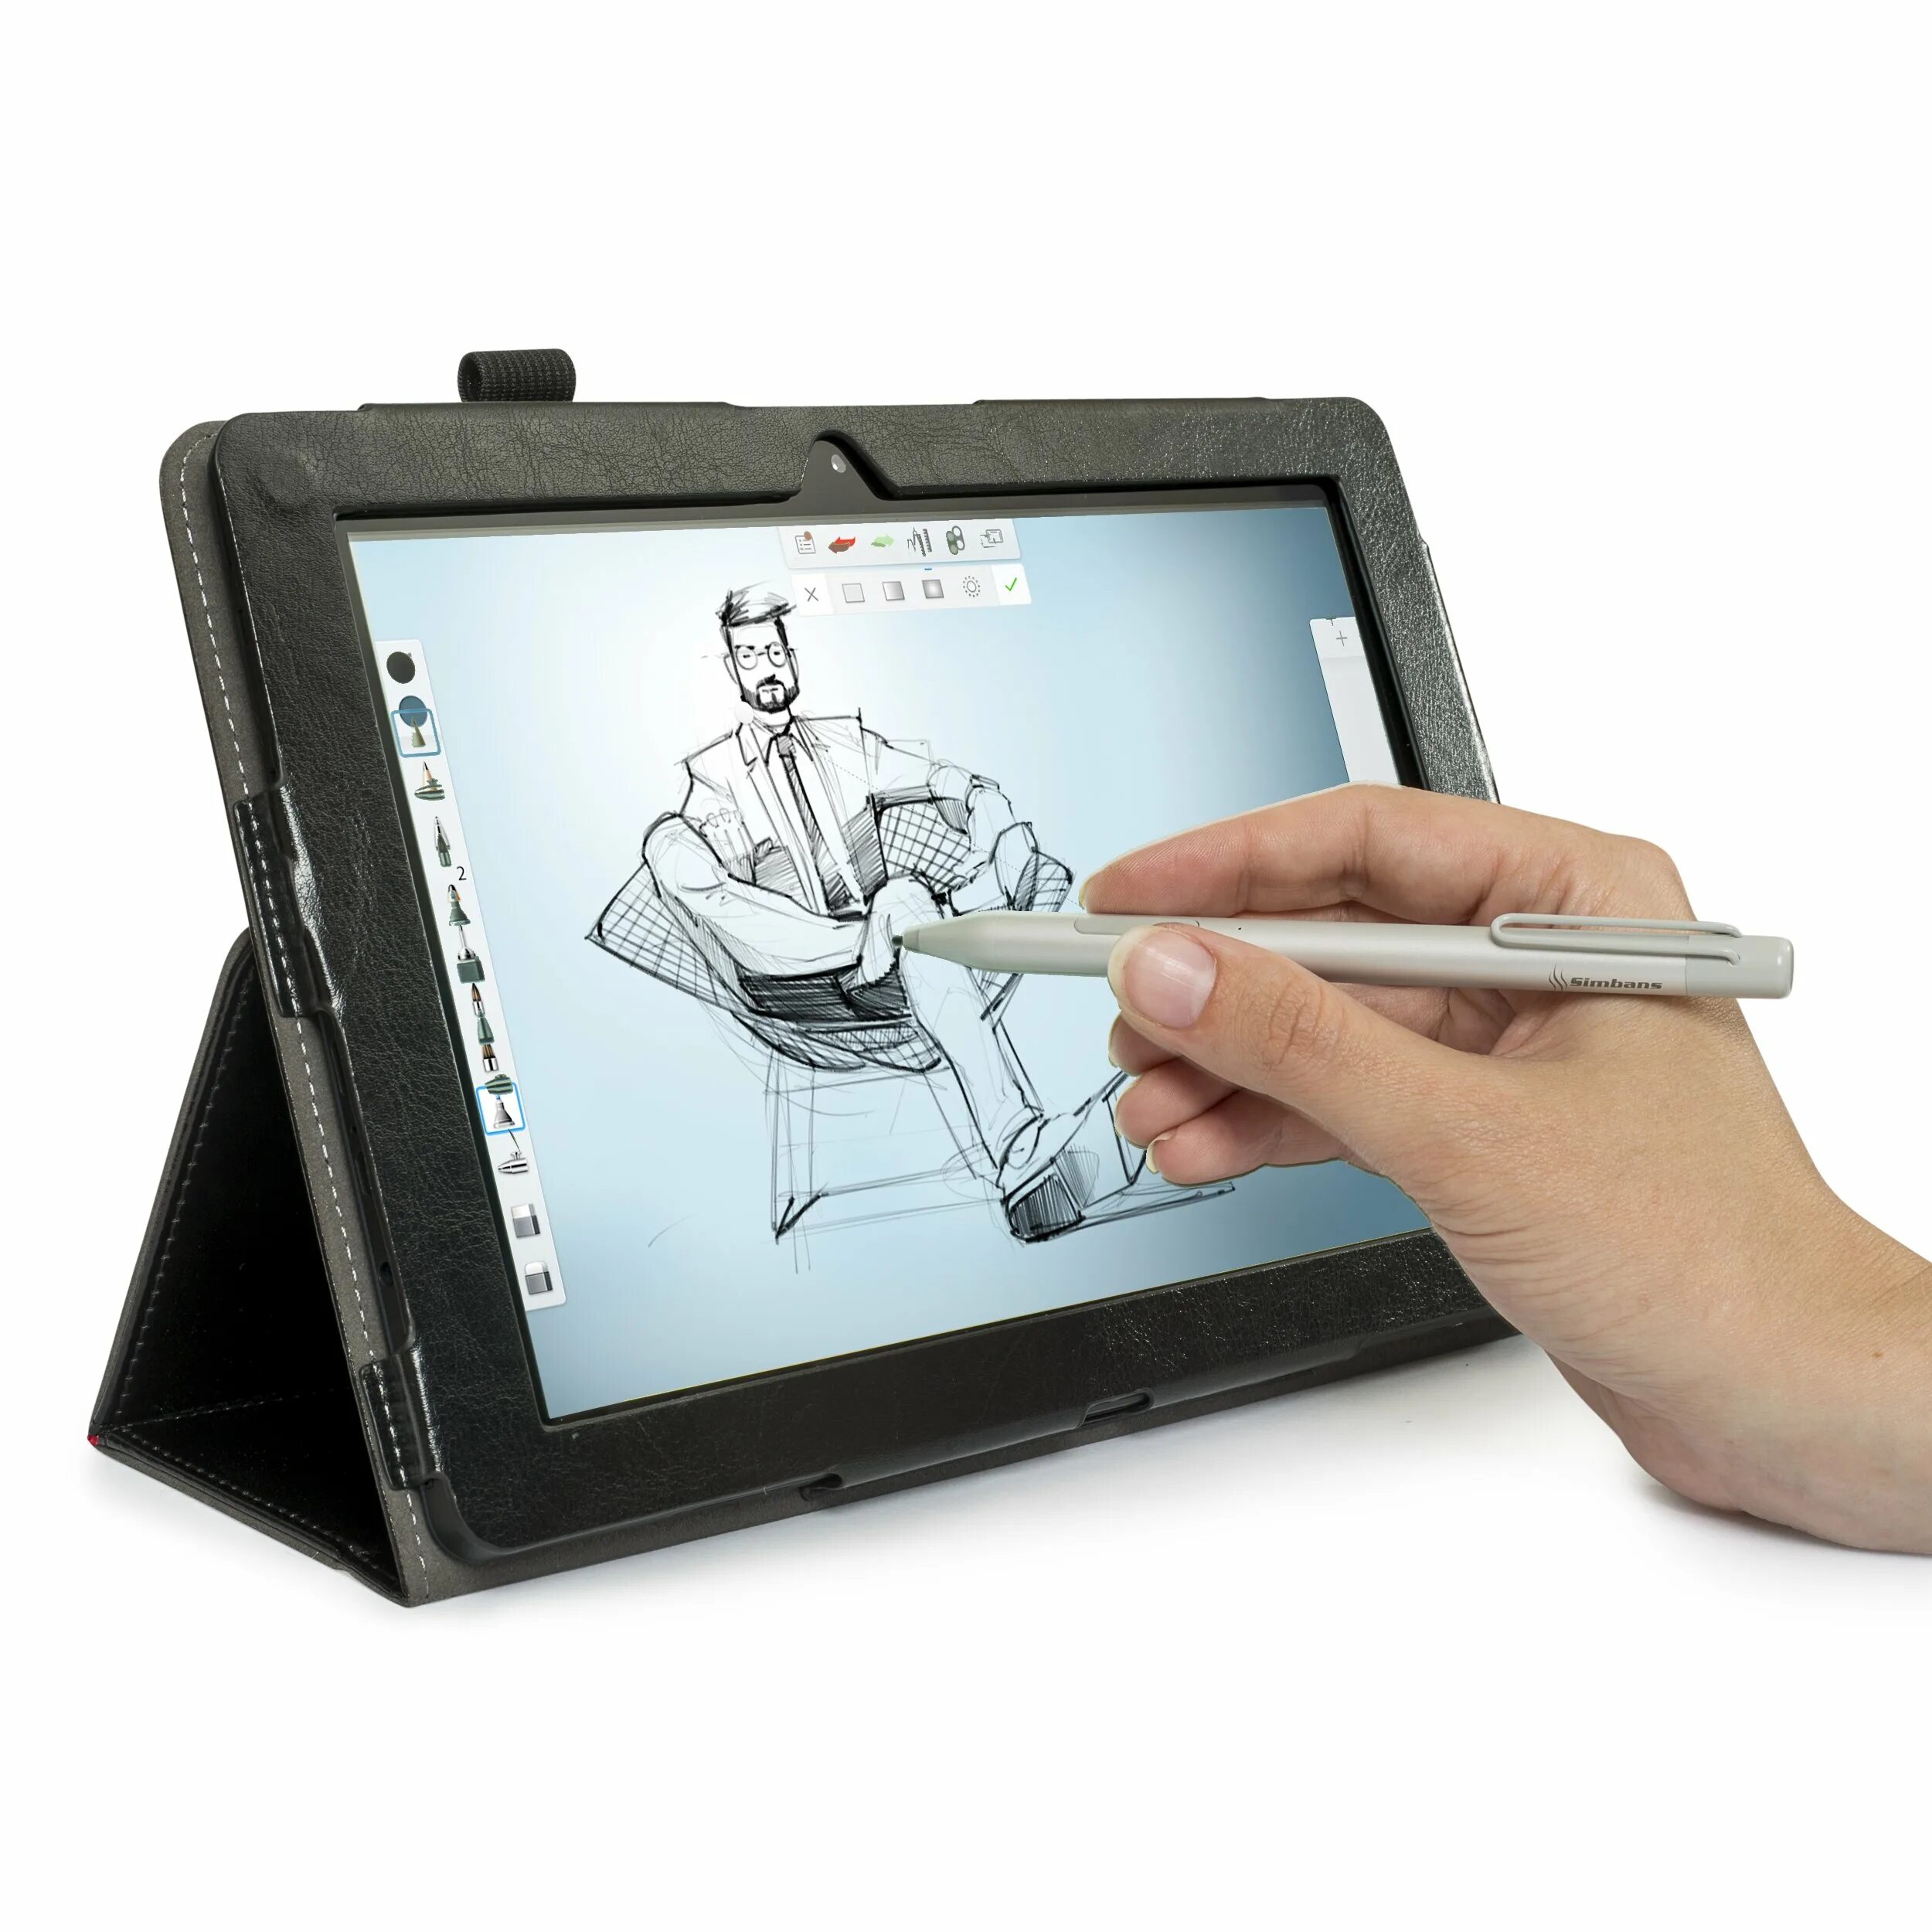 Arte tablet. Планшет 10 inch Tablet PC,10.1. Интерактивный графический планшет. Интерактивный планшет для рисования. Экранный графический планшет для рисования.